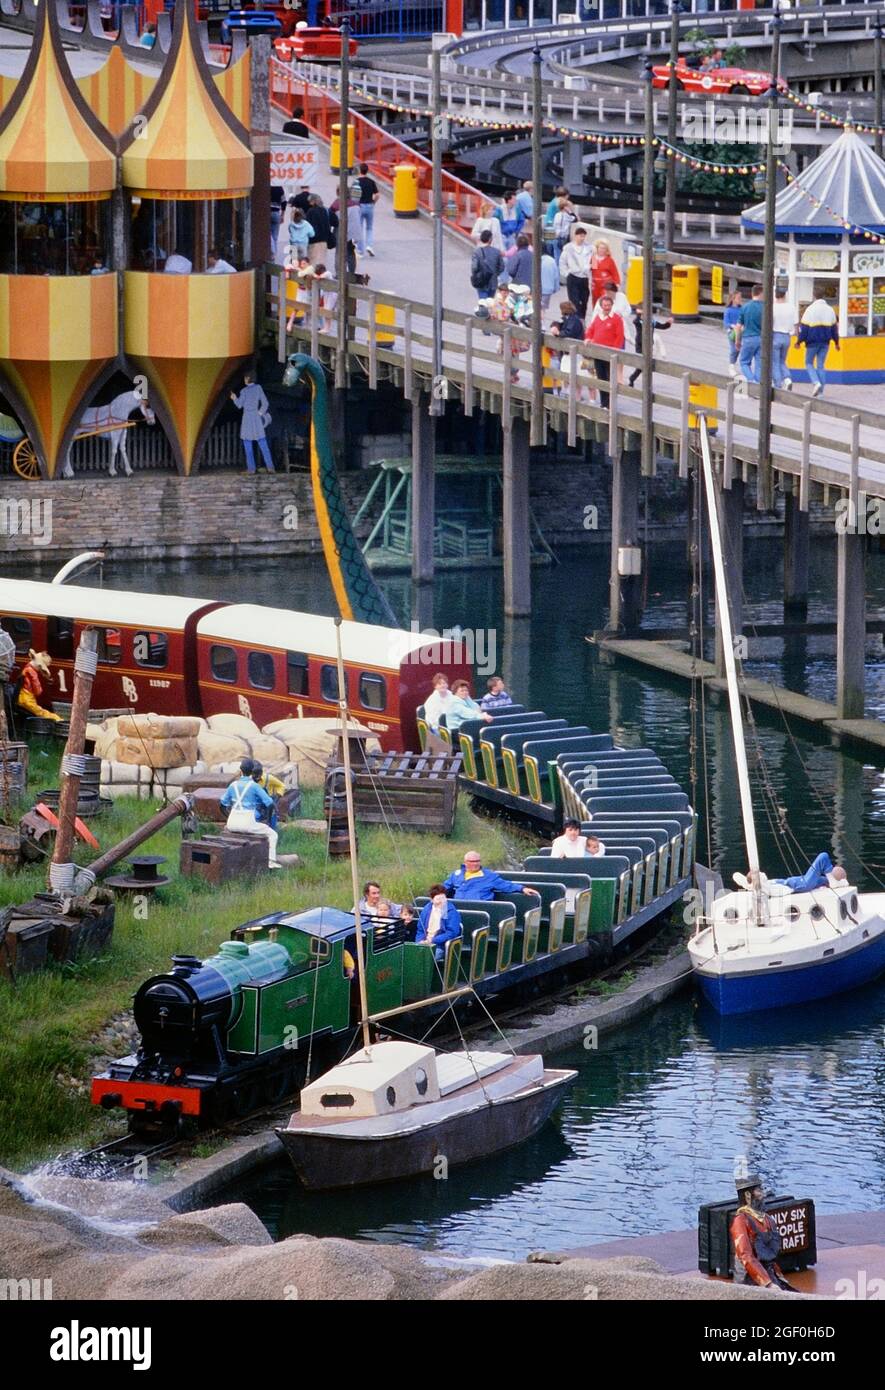 Le train de passagers Blackpool Pleasure Beach Express. Blackpool Pleasure Beach, Blackpool, Lancashire, Angleterre, Royaume-Uni. Vers 1988 Banque D'Images